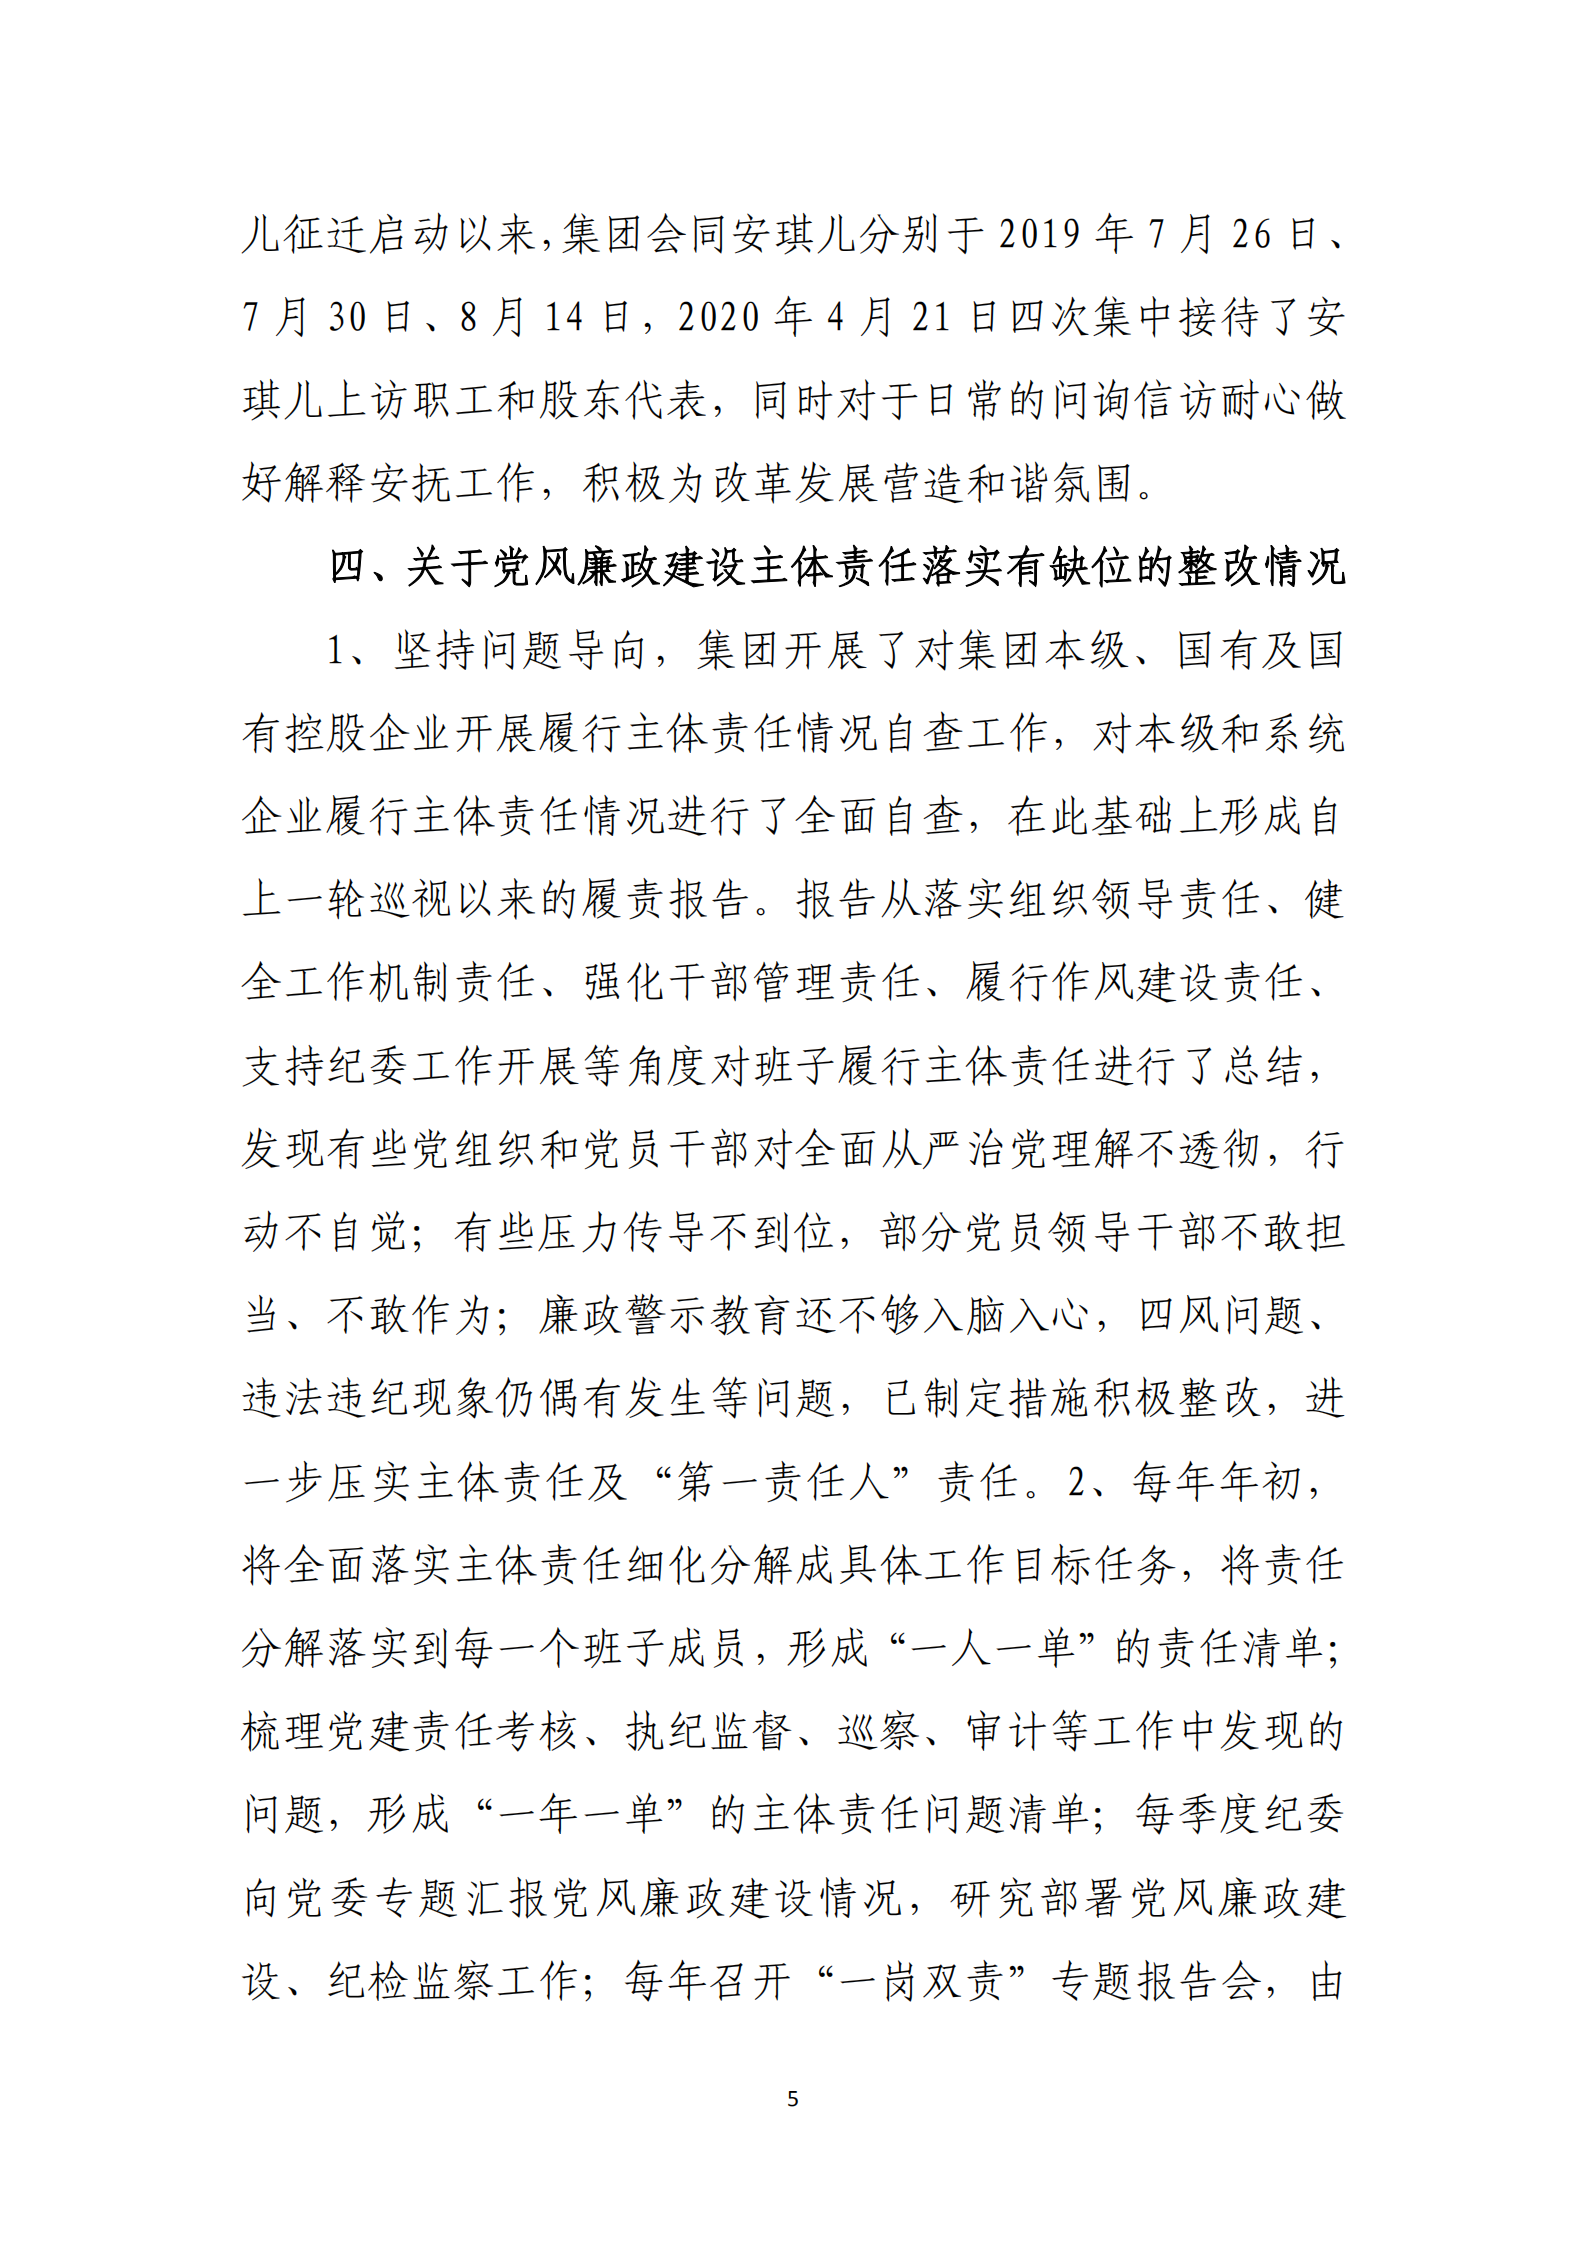 【体育365官方网站】中国有限公司党委关于巡察整改情况的通报_04.png